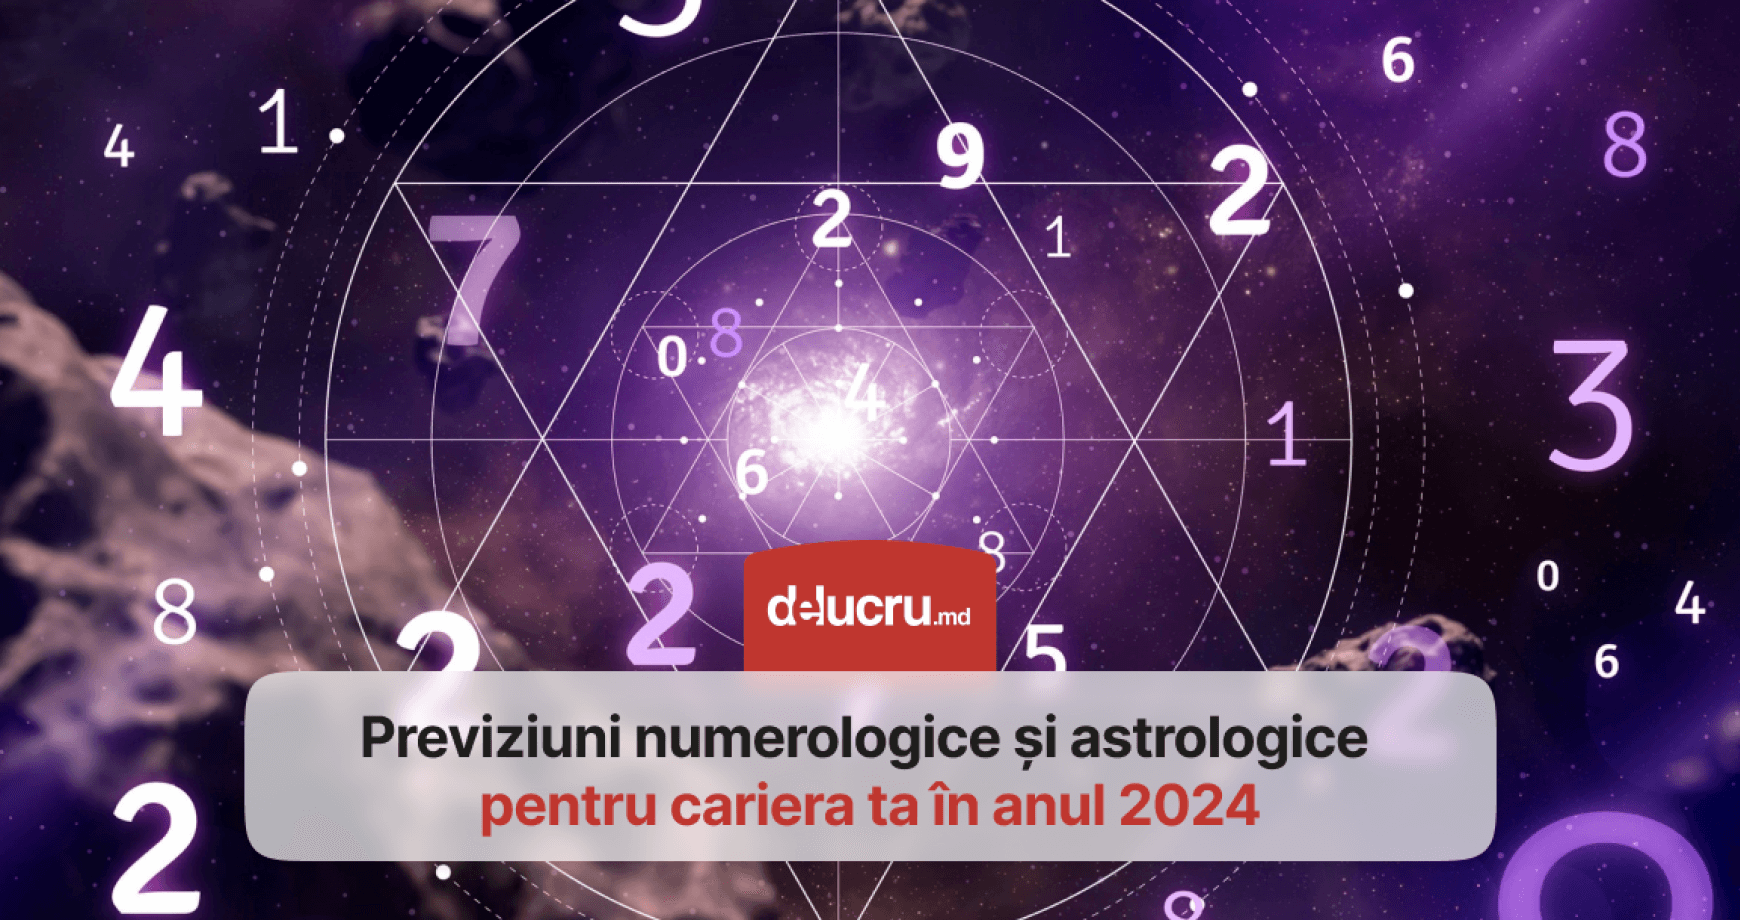 Abundență și muncă asiduă. Află cum va fi anul 2024, din punct de vedere numerologic și astrologic pentru cariera ta